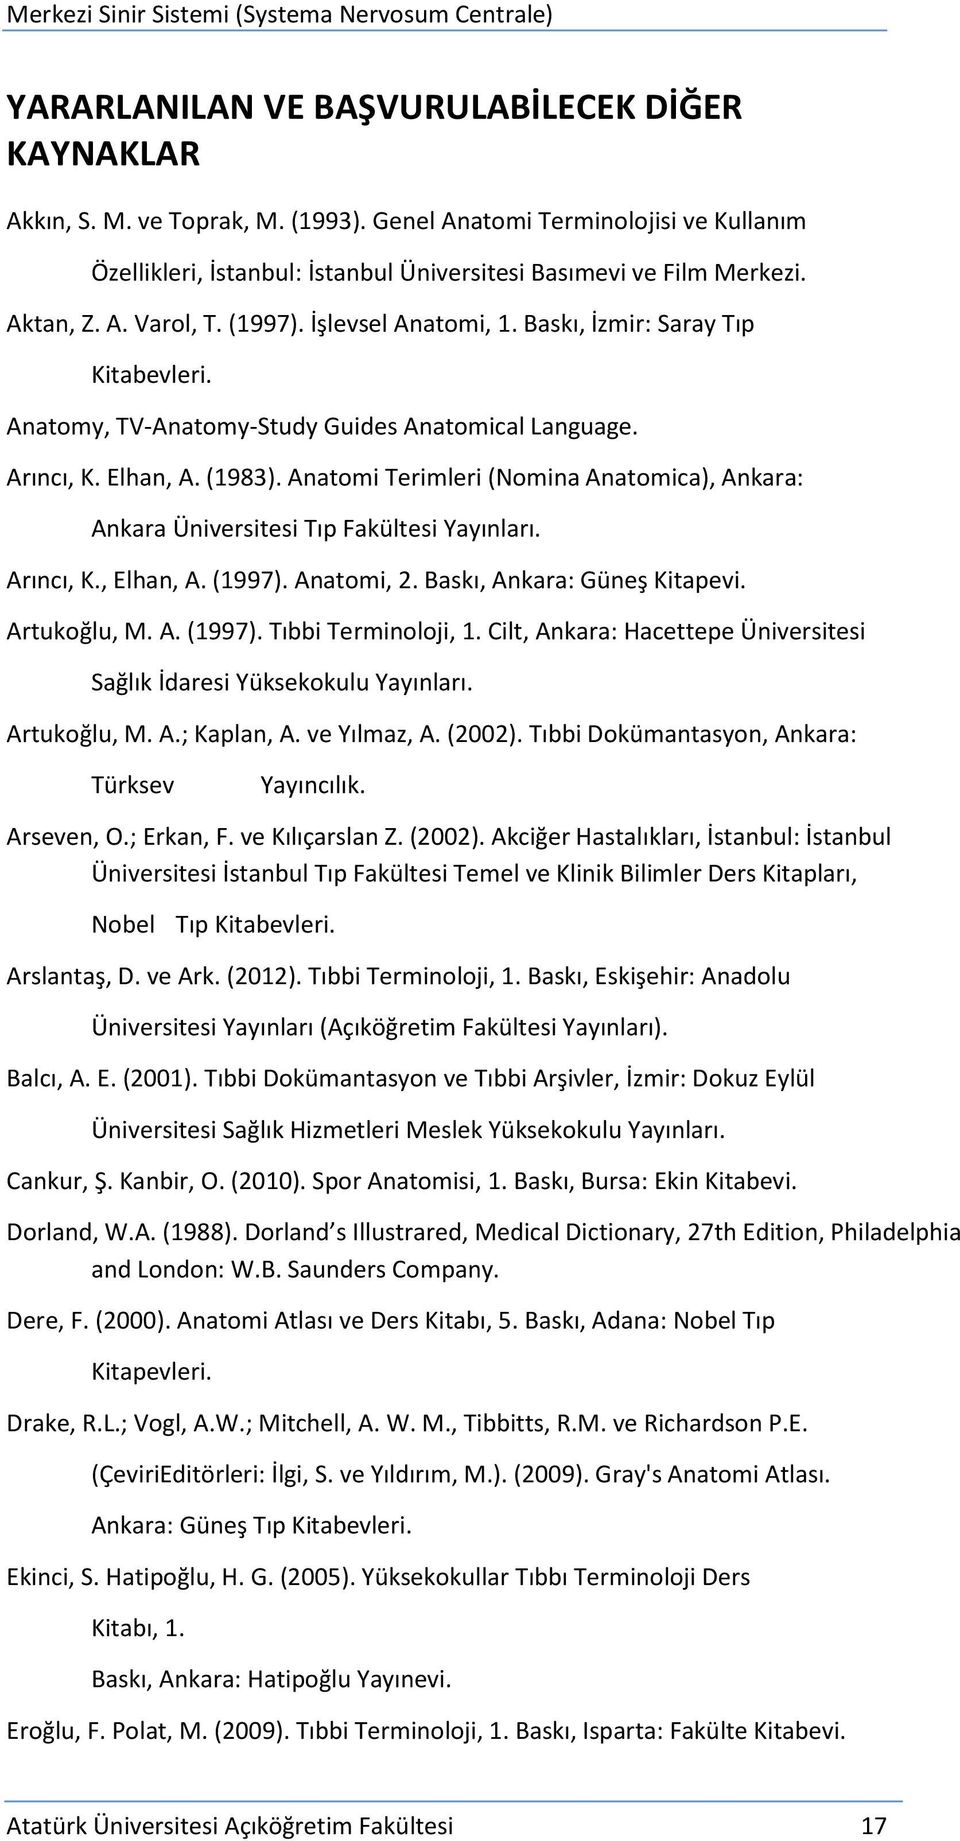 Anatomi Terimleri (Nomina Anatomica), Ankara: Ankara Üniversitesi Tıp Fakültesi Yayınları. Arıncı, K., Elhan, A. (1997). Anatomi, 2. Baskı, Ankara: Güneş Kitapevi. Artukoğlu, M. A. (1997). Tıbbi Terminoloji, 1.